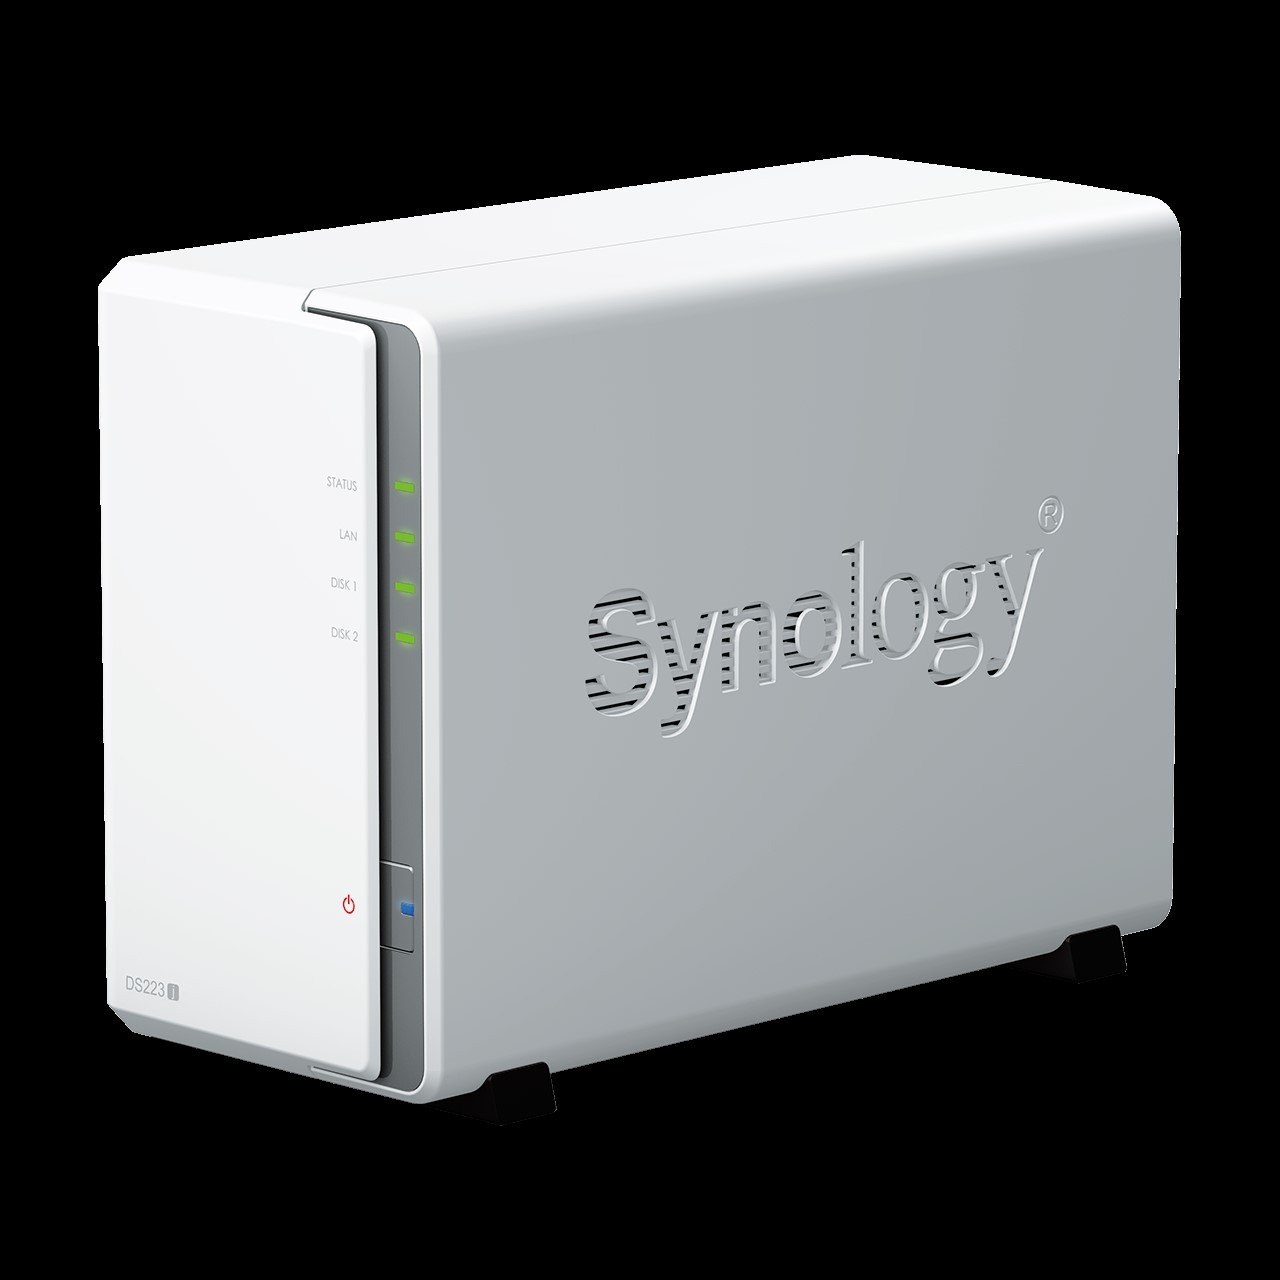 Thiết bị lưu trữ NAS Synology DS223j